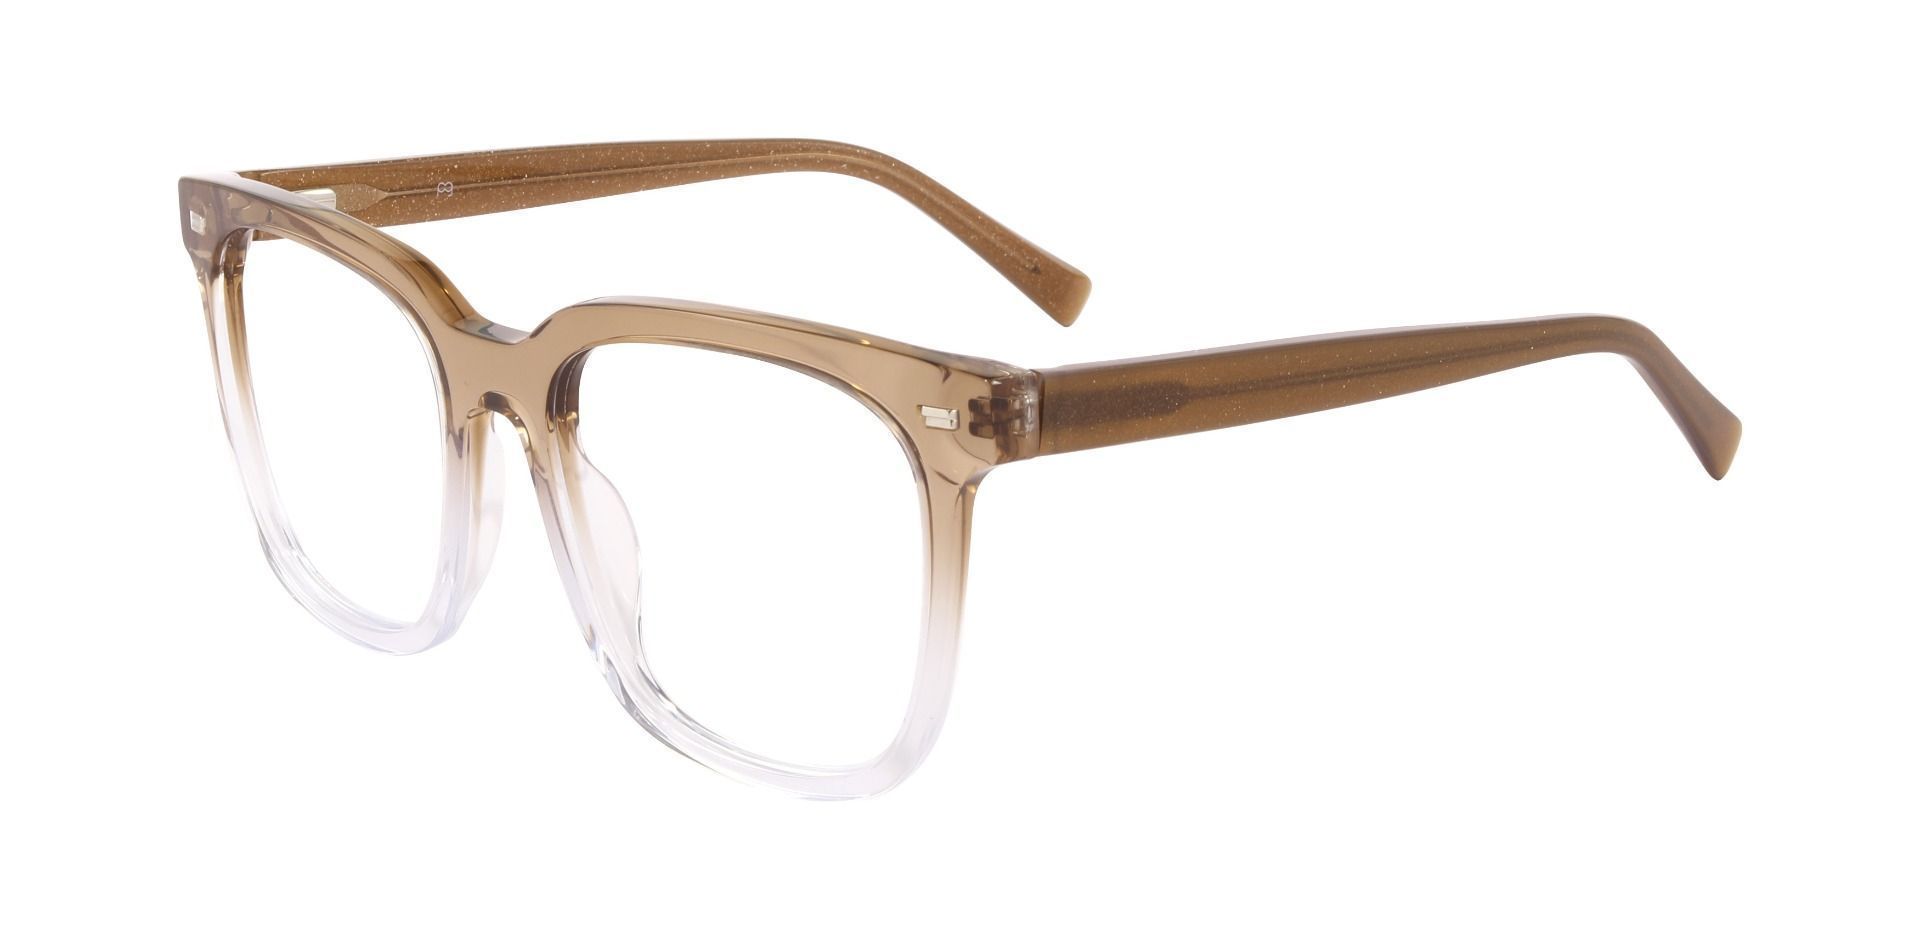 Horton Oversized Square Prescription Glasses - Brown